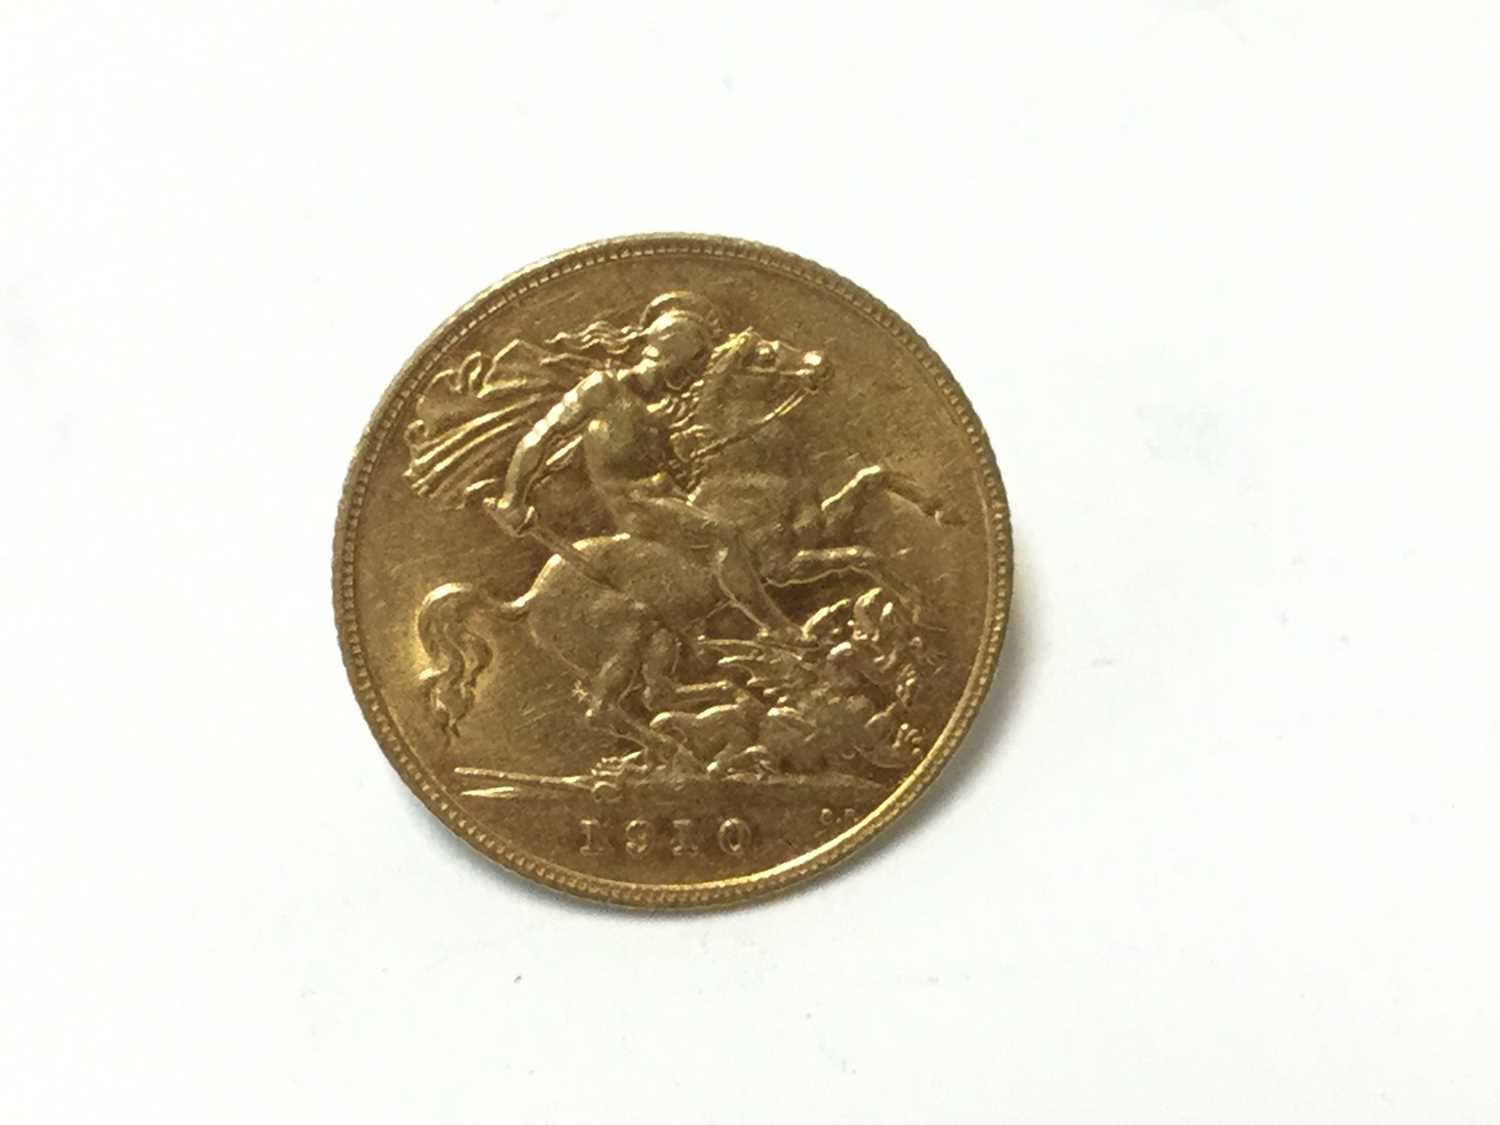 edgar double sided coin